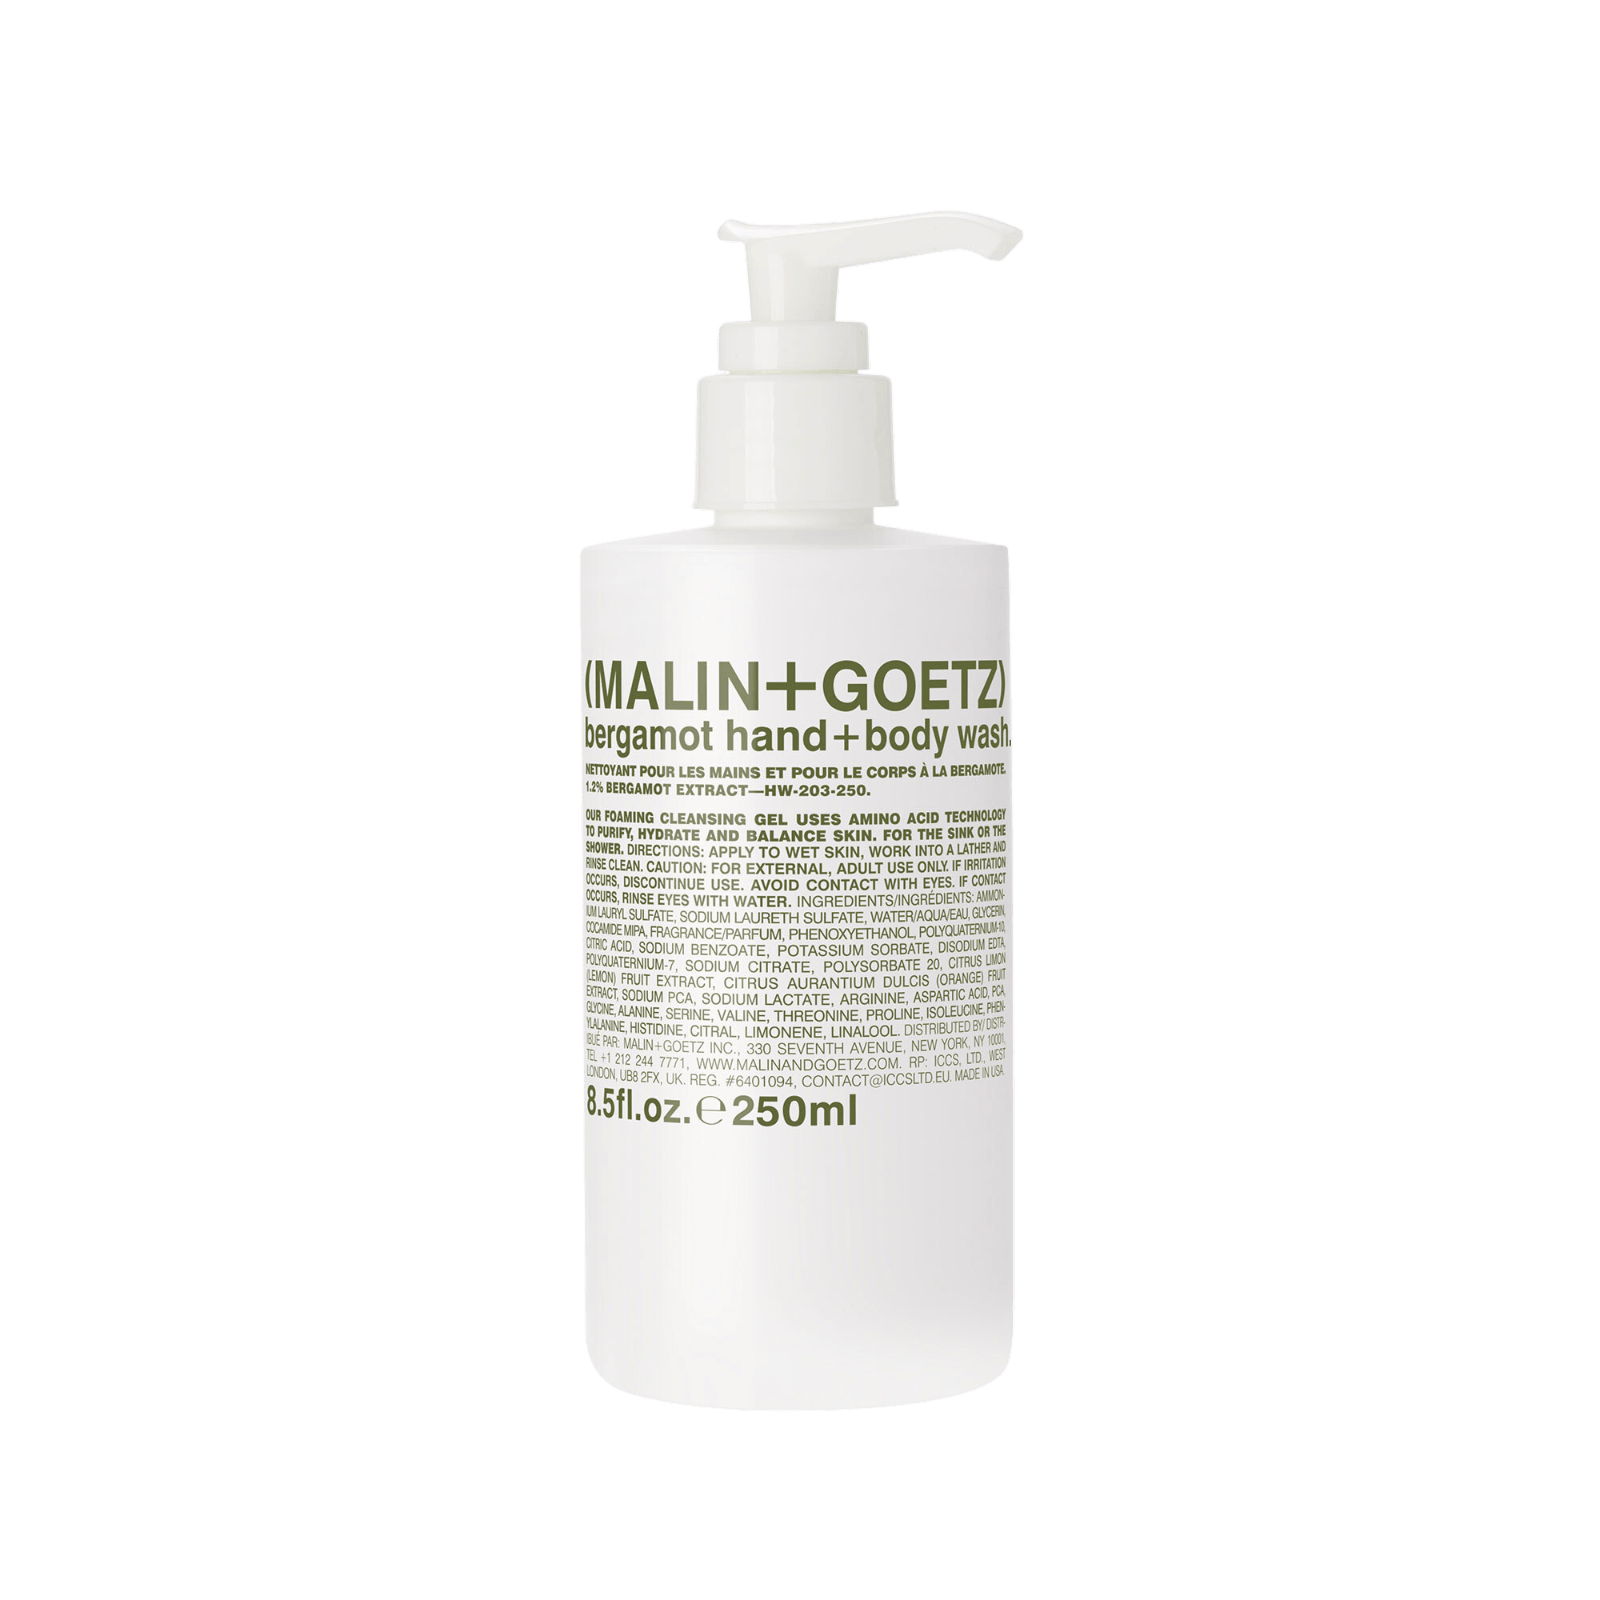 Malin + Goetz - bergamot hand + body wash | Perfume Lounge